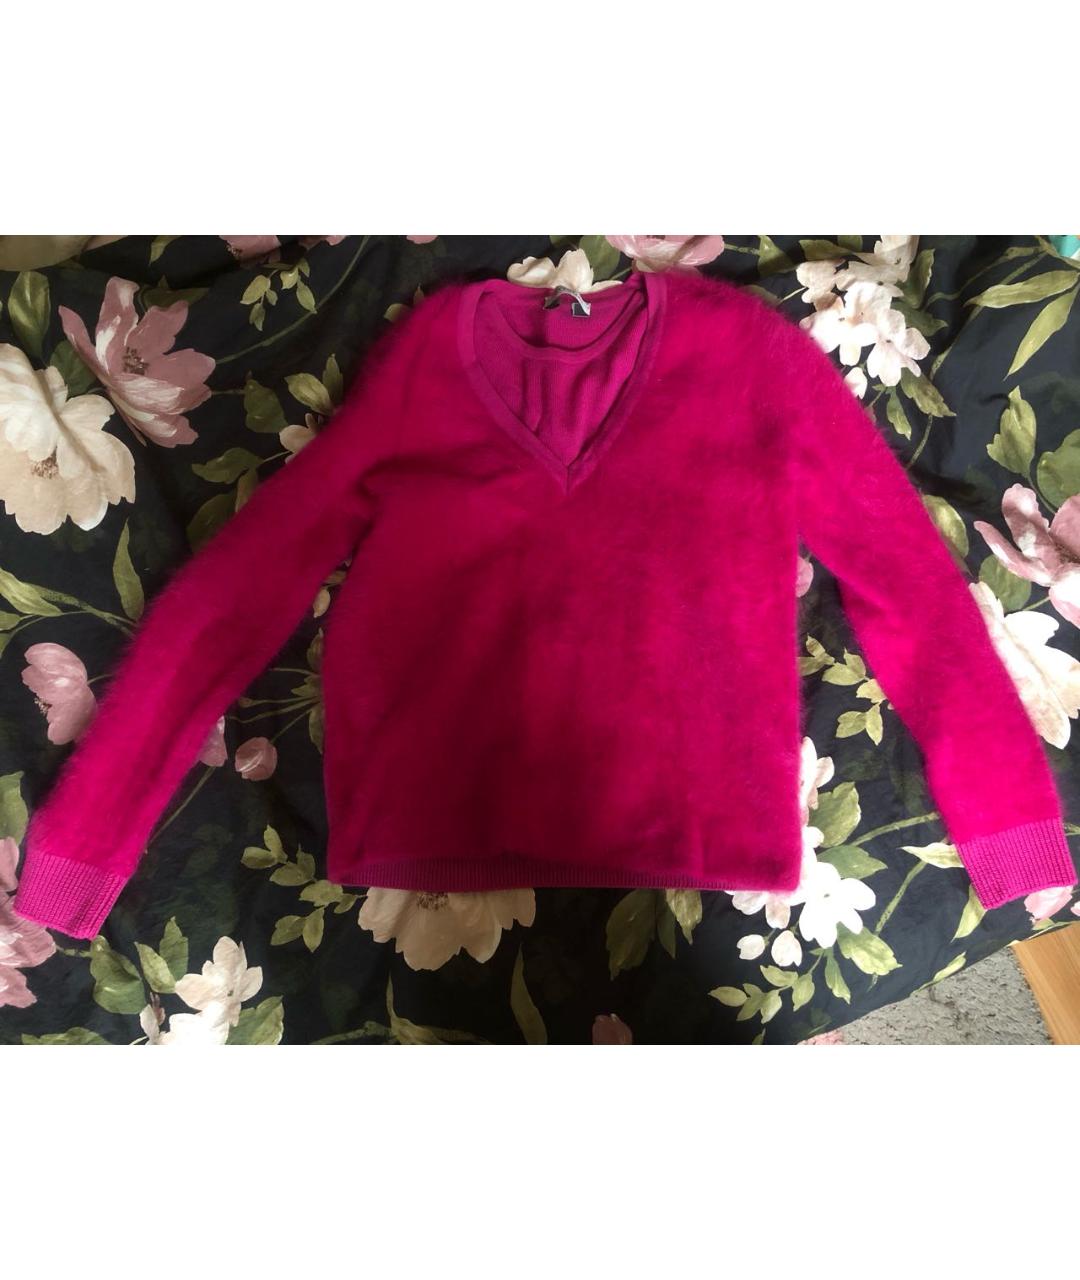 SPORTMAX Розовый шерстяной джемпер / свитер, фото 2